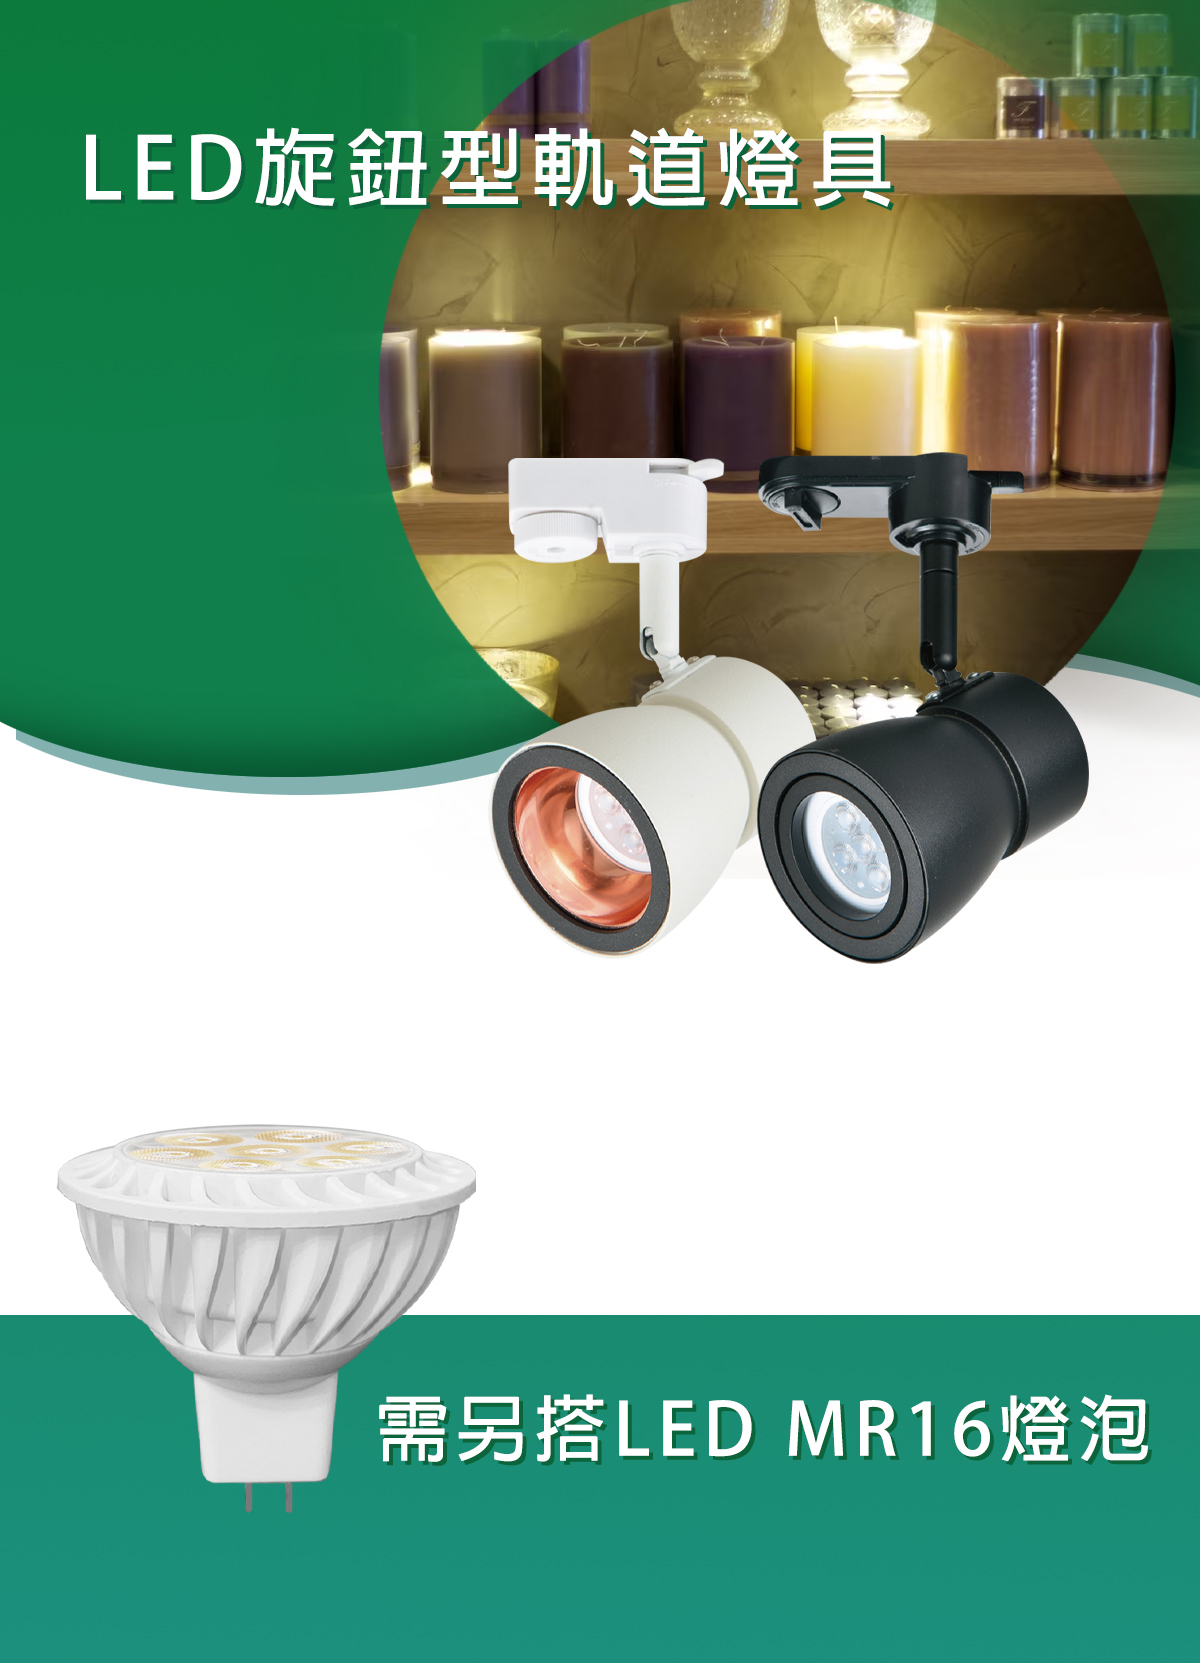 【KAO'S】直壓杯燈軌道燈 MR16杯燈另計 可替換燈泡 